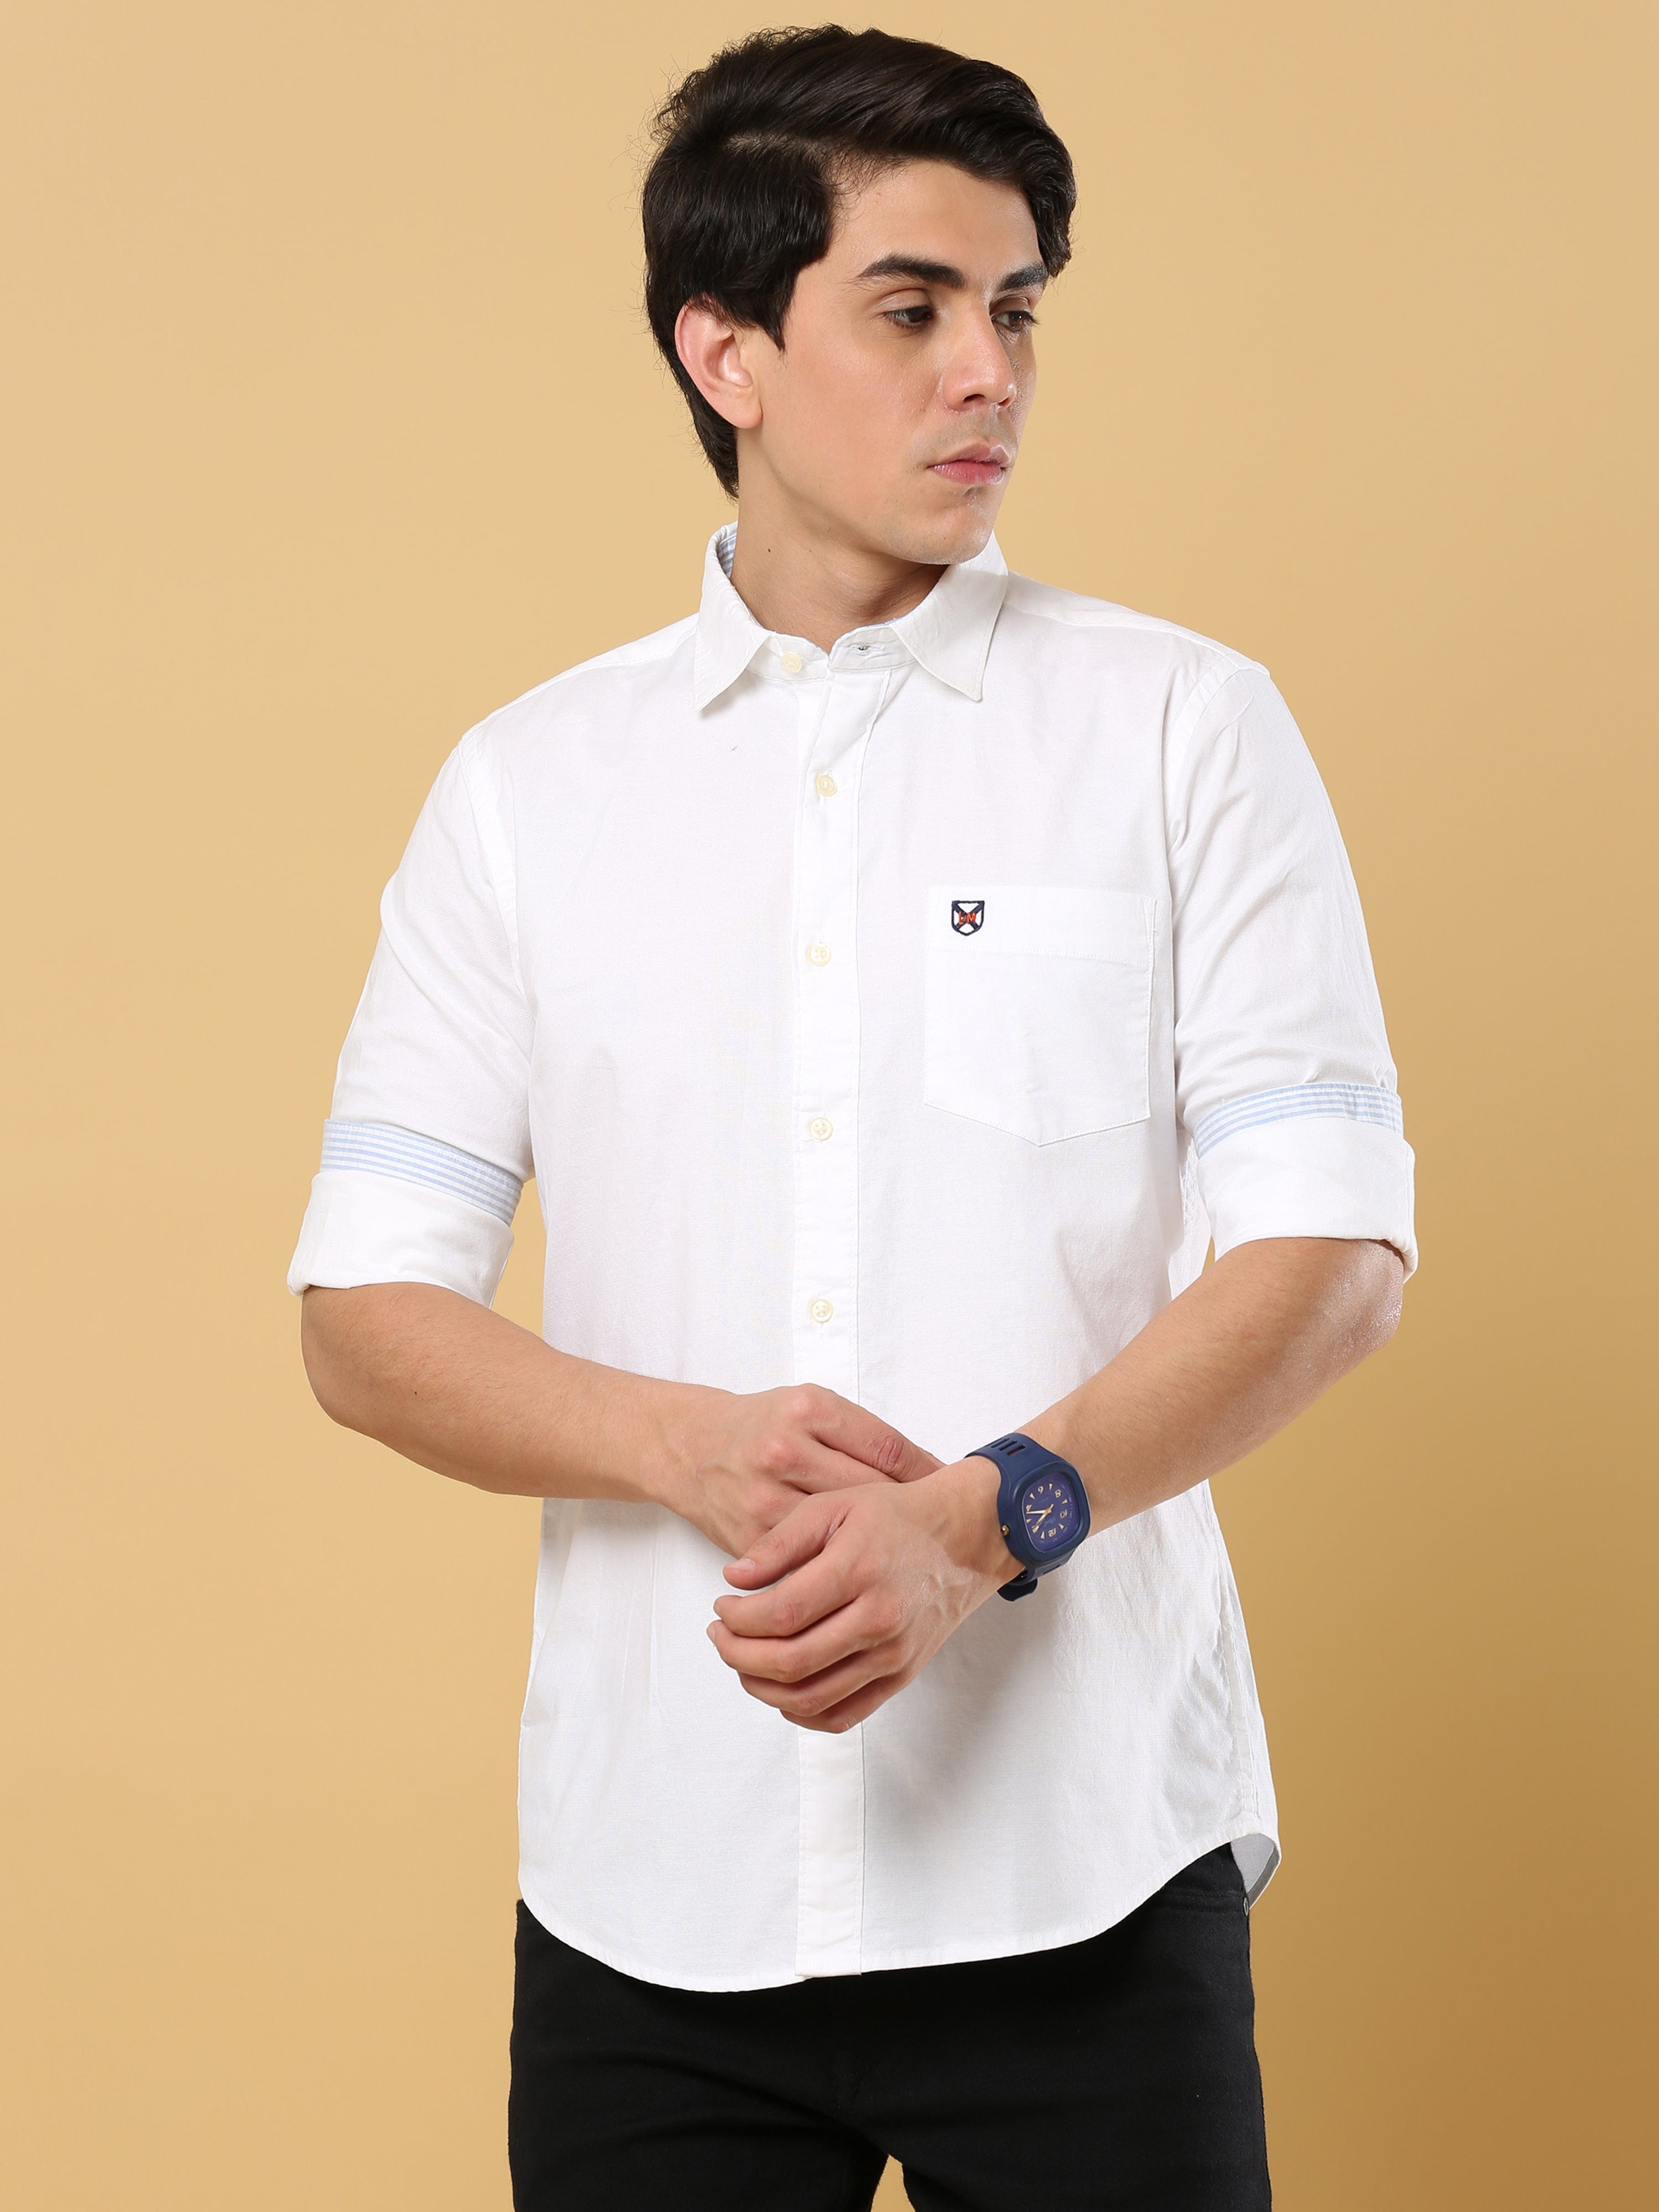 Premium White Oxford Shirt